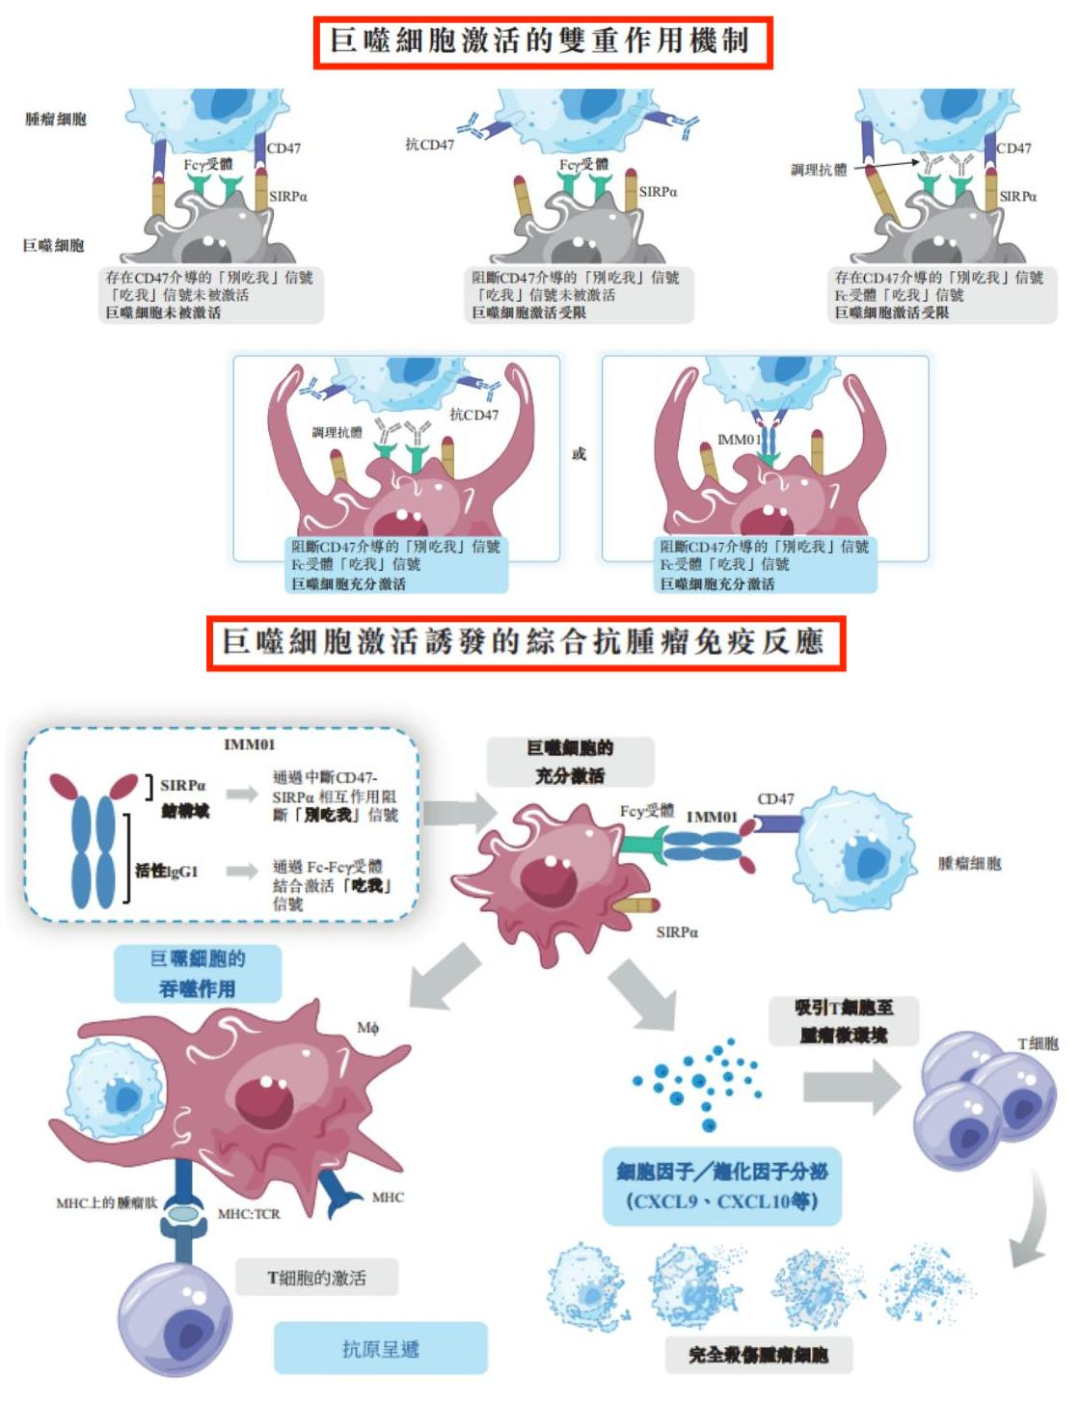 巨噬细胞激活的双重作用机制